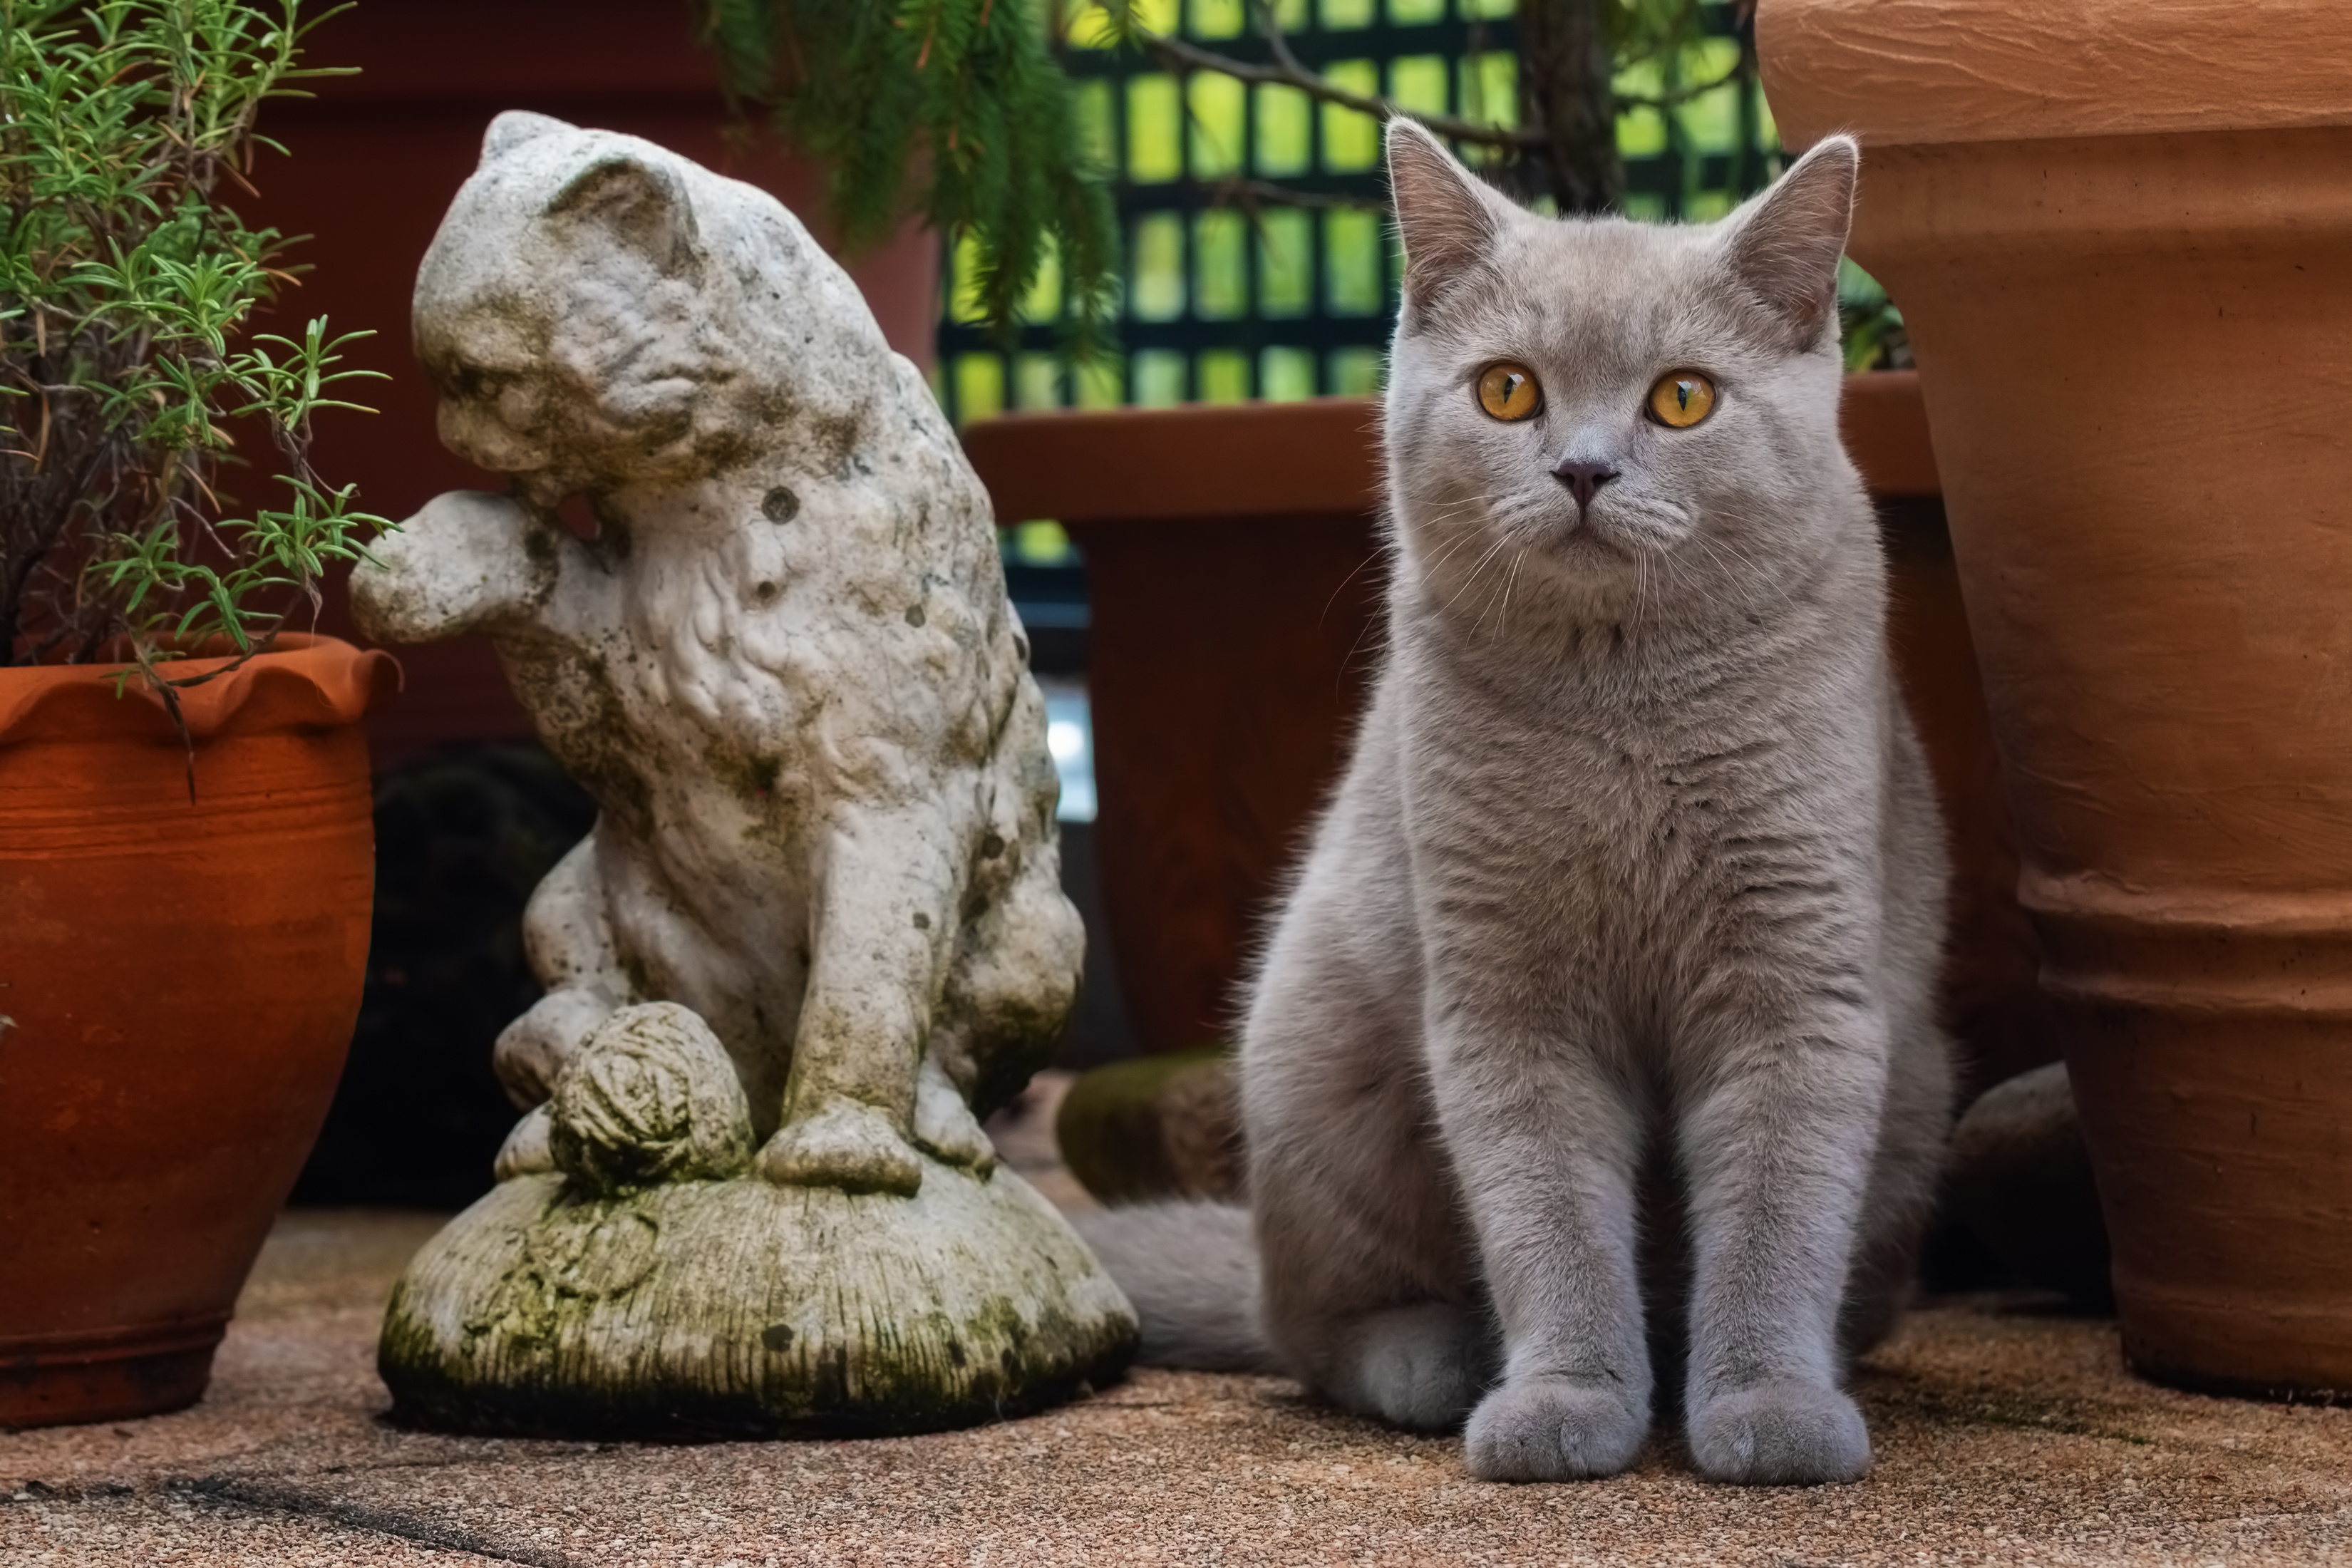 Animals Cats Feline Mammals Statue Plants Plant Pot 3300x2200